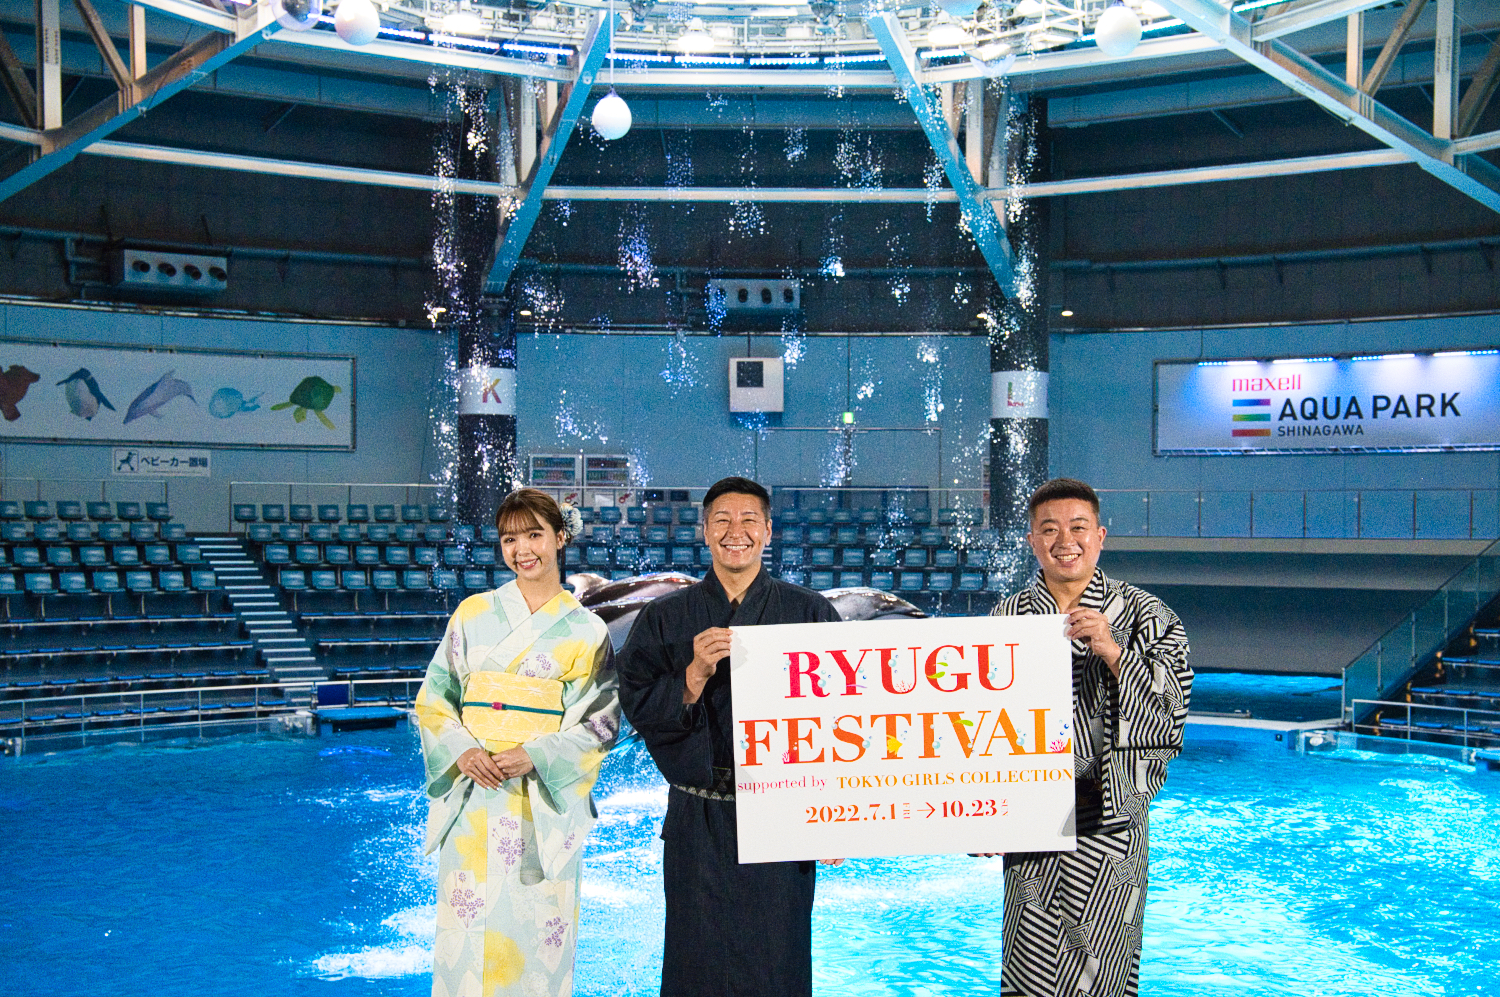 藤田ニコル、チョコレートプラネットに魅力をプレゼン！海の世界のオシャレで可愛い空間『RYUGU FESTIVAL supported by TOKYO GIRLS COLLECTION』